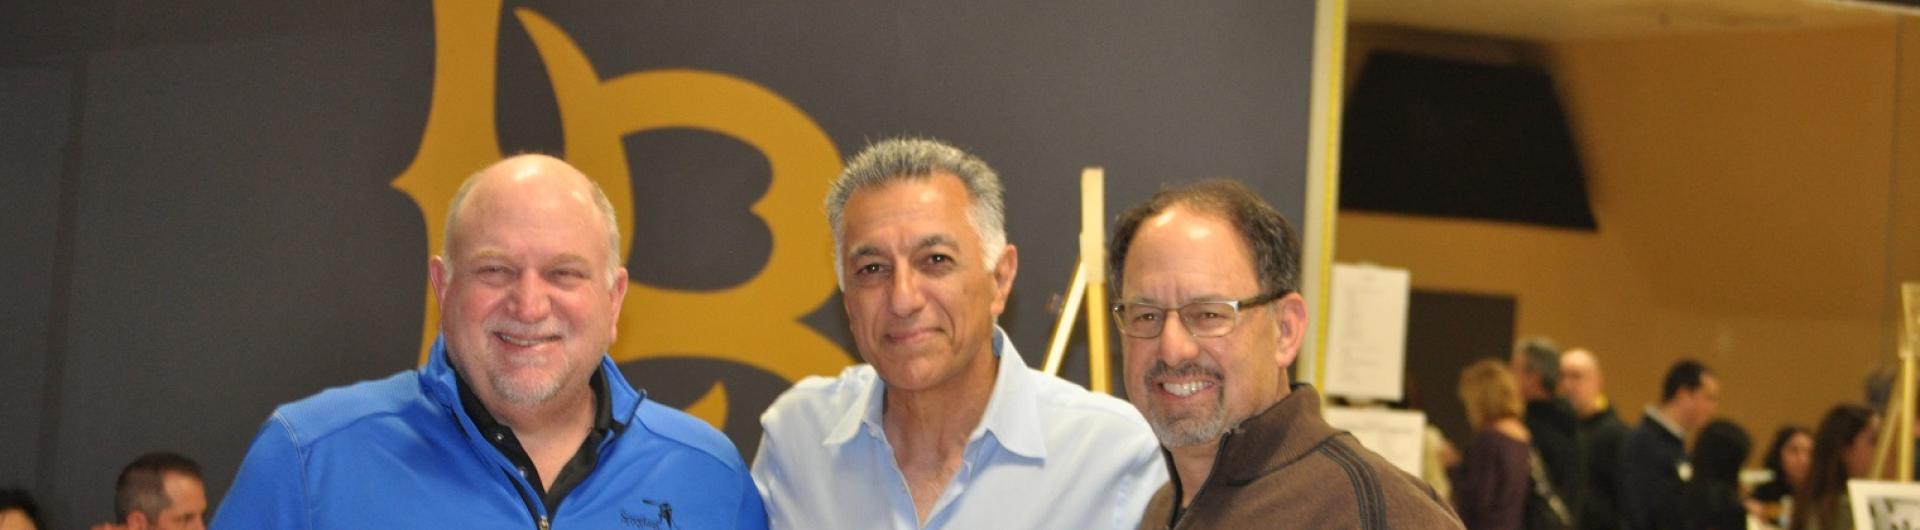 Dean Forouzan Golshani, center, and alumni